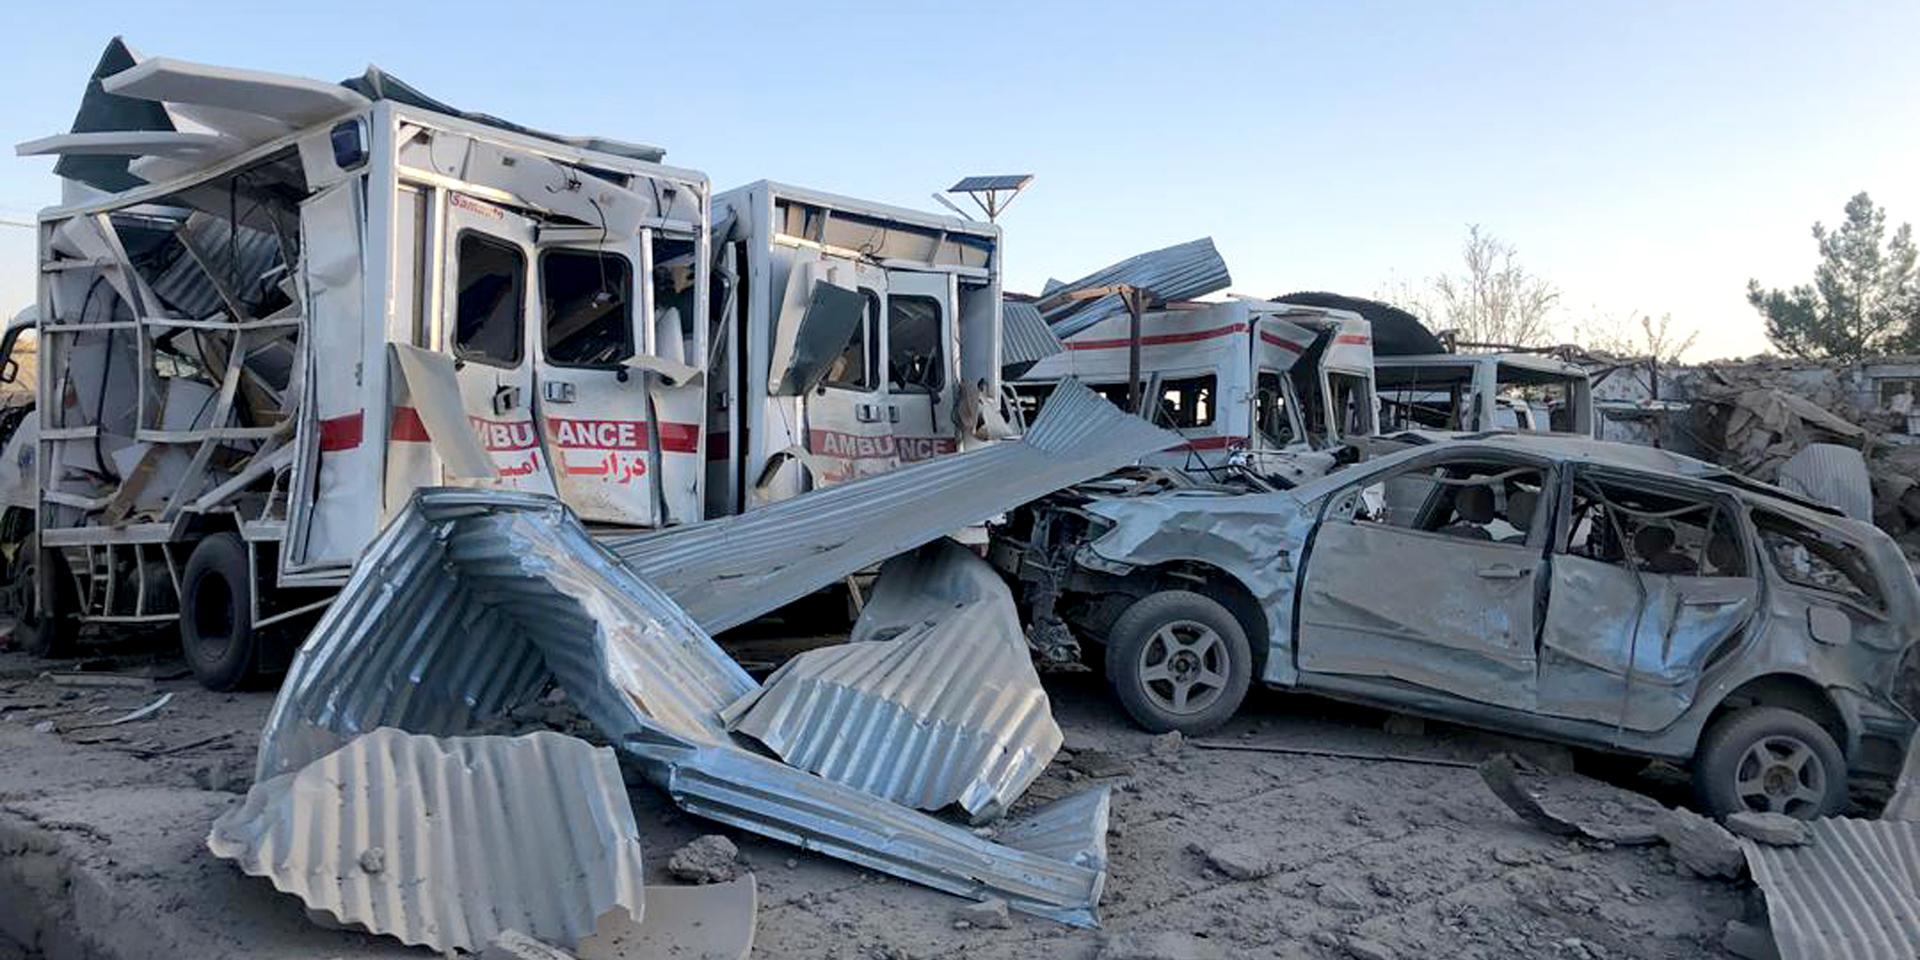 En bil lastad med sprängämnen dödade minst 20 personer vid ett sjukhus i staden Qalat i Afghanistan.